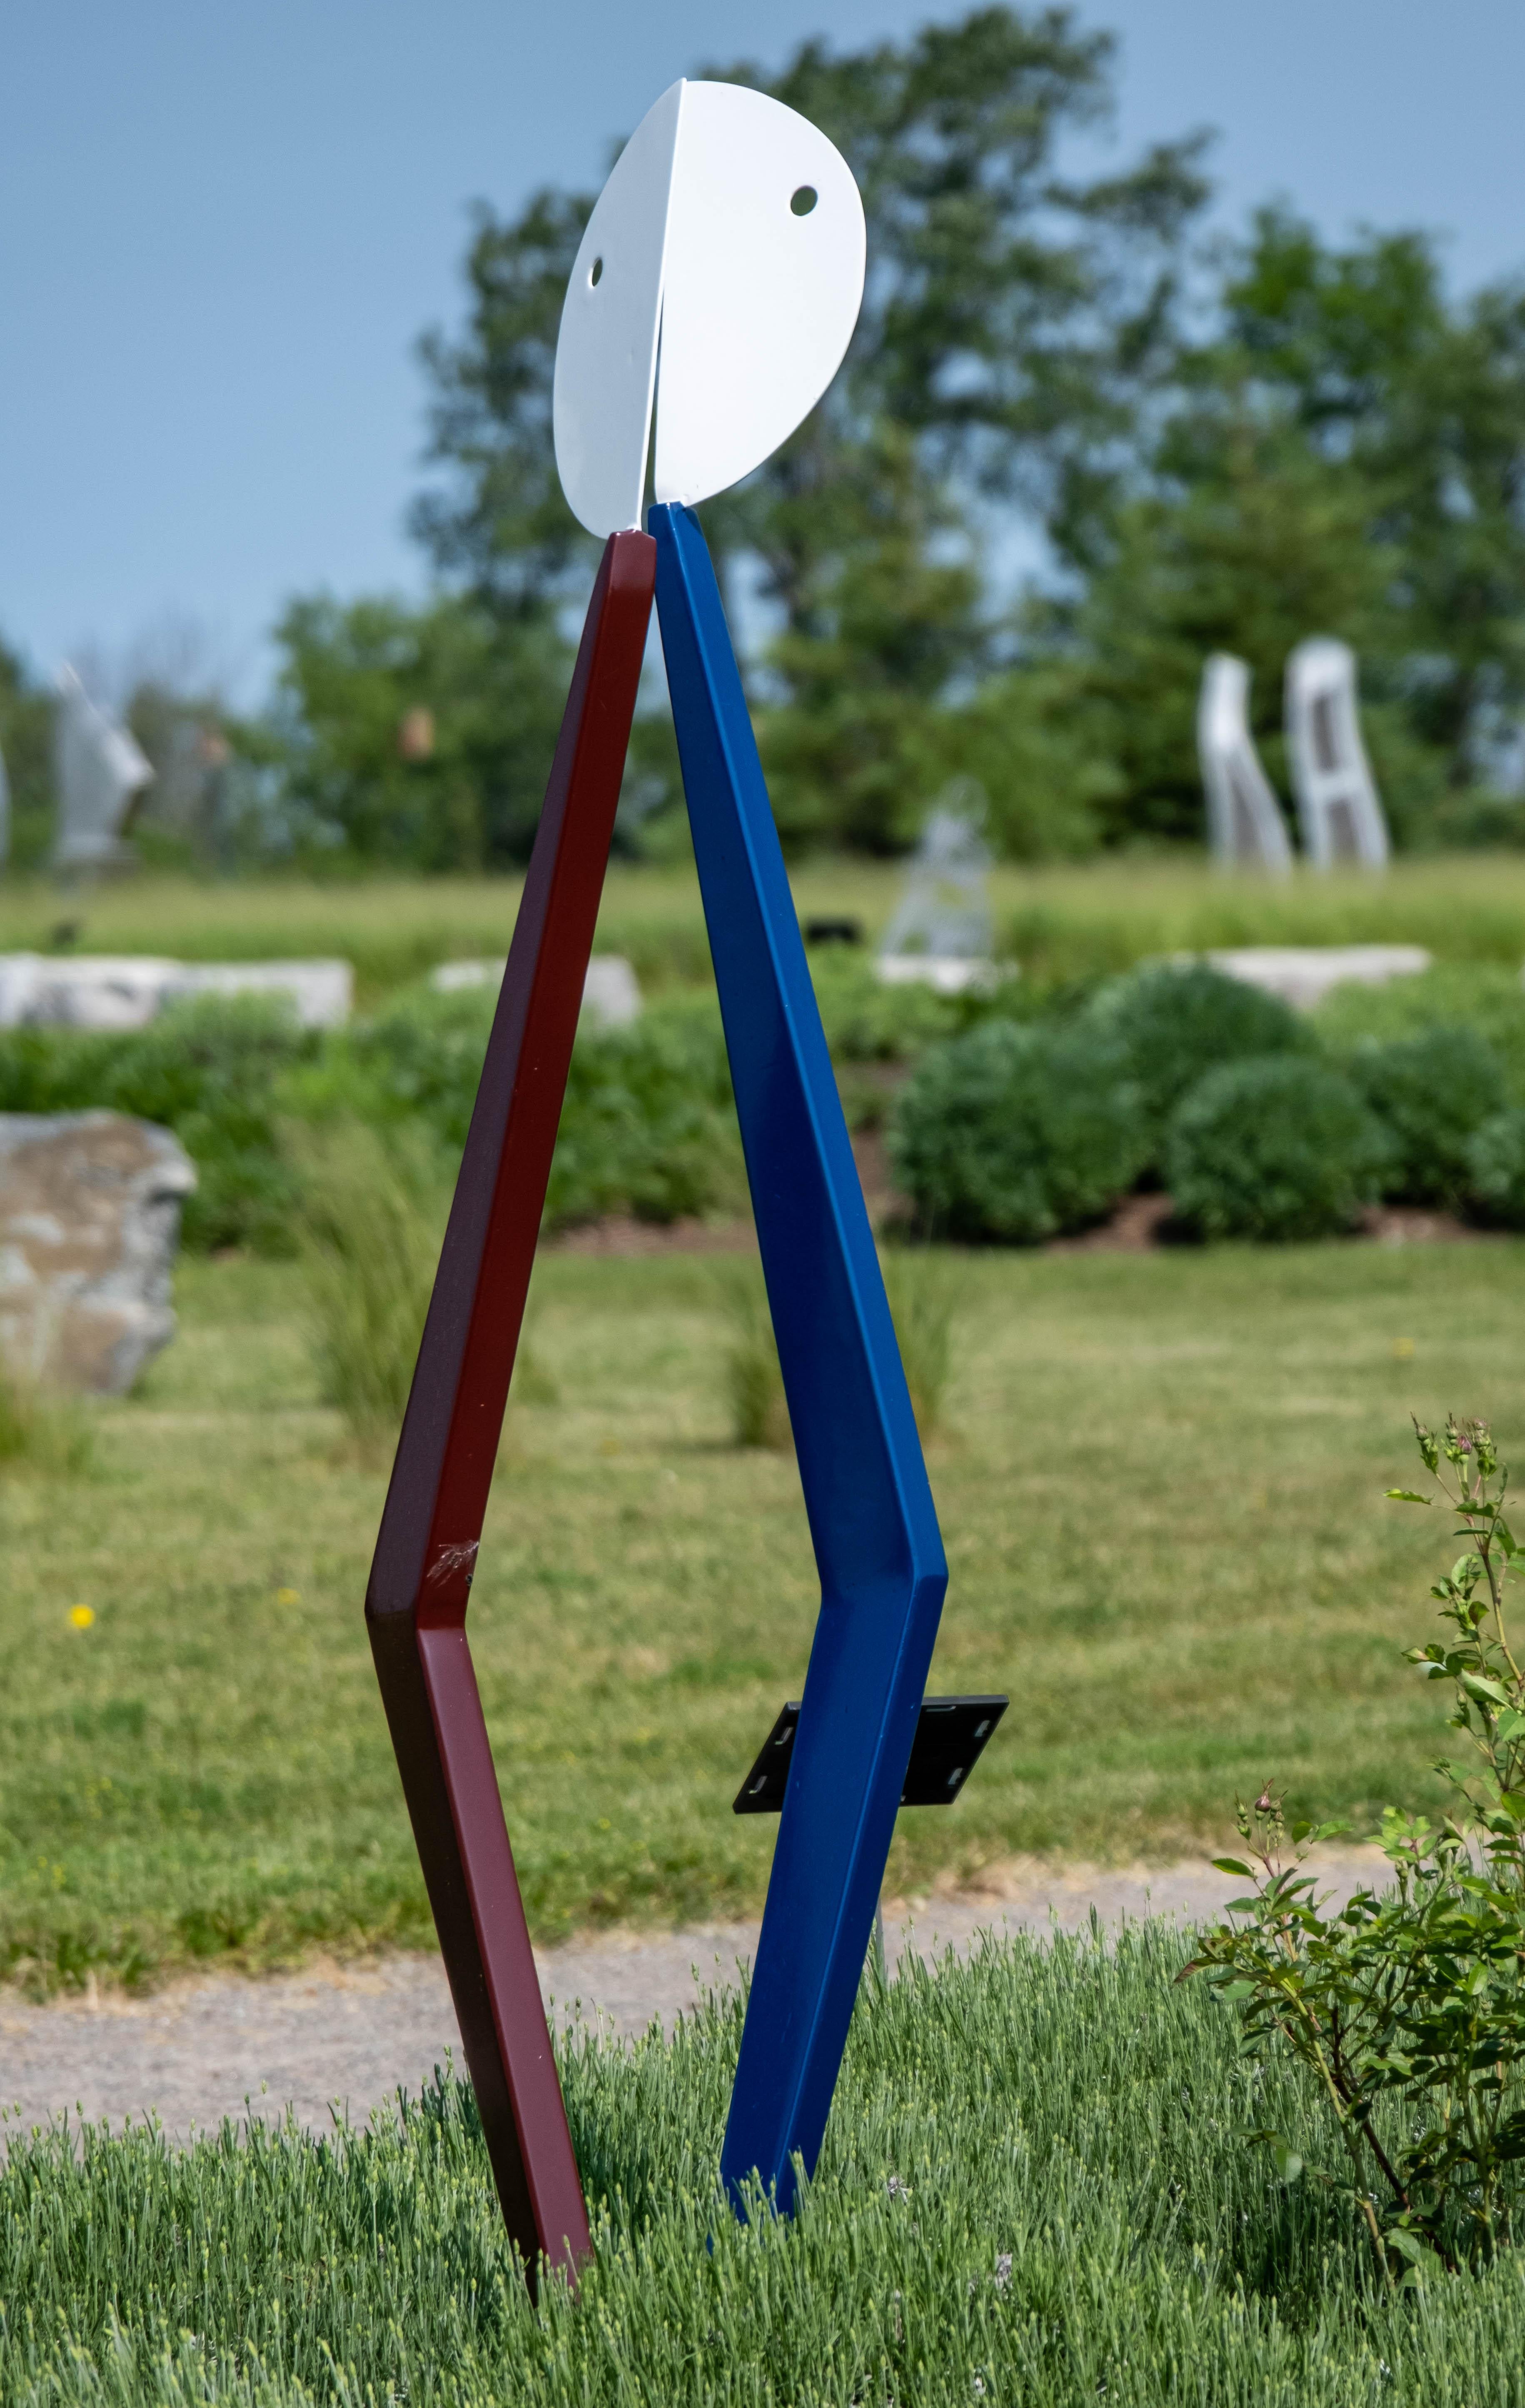 In dieser fesselnden abstrakten Skulptur von Robert Clarke-Ellis scheinen zwei Figuren miteinander zu tanzen. Weiß gemalte Halbmondformen überlagern blaue und rote stabförmige Teile, die sich überschneiden, als ob sie sich gegenseitig umarmen. Der